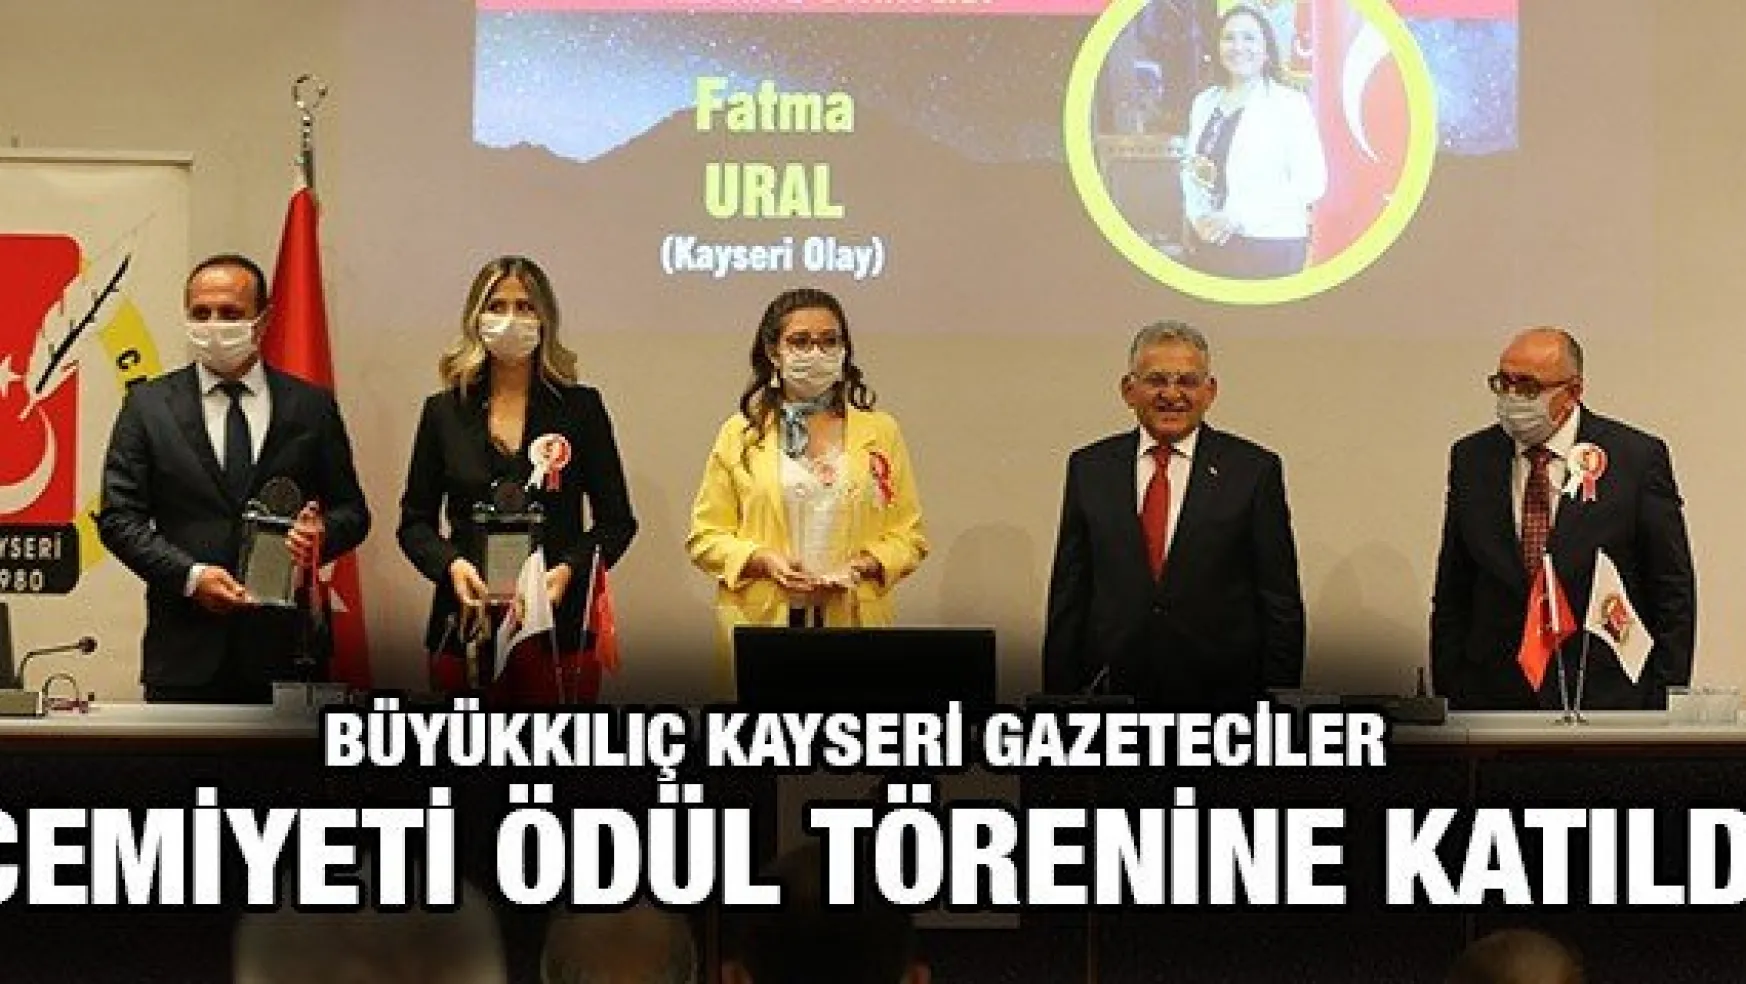 Büyükkılıç Kayseri Gazeteciler Cemiyeti ödül törenine katıldı